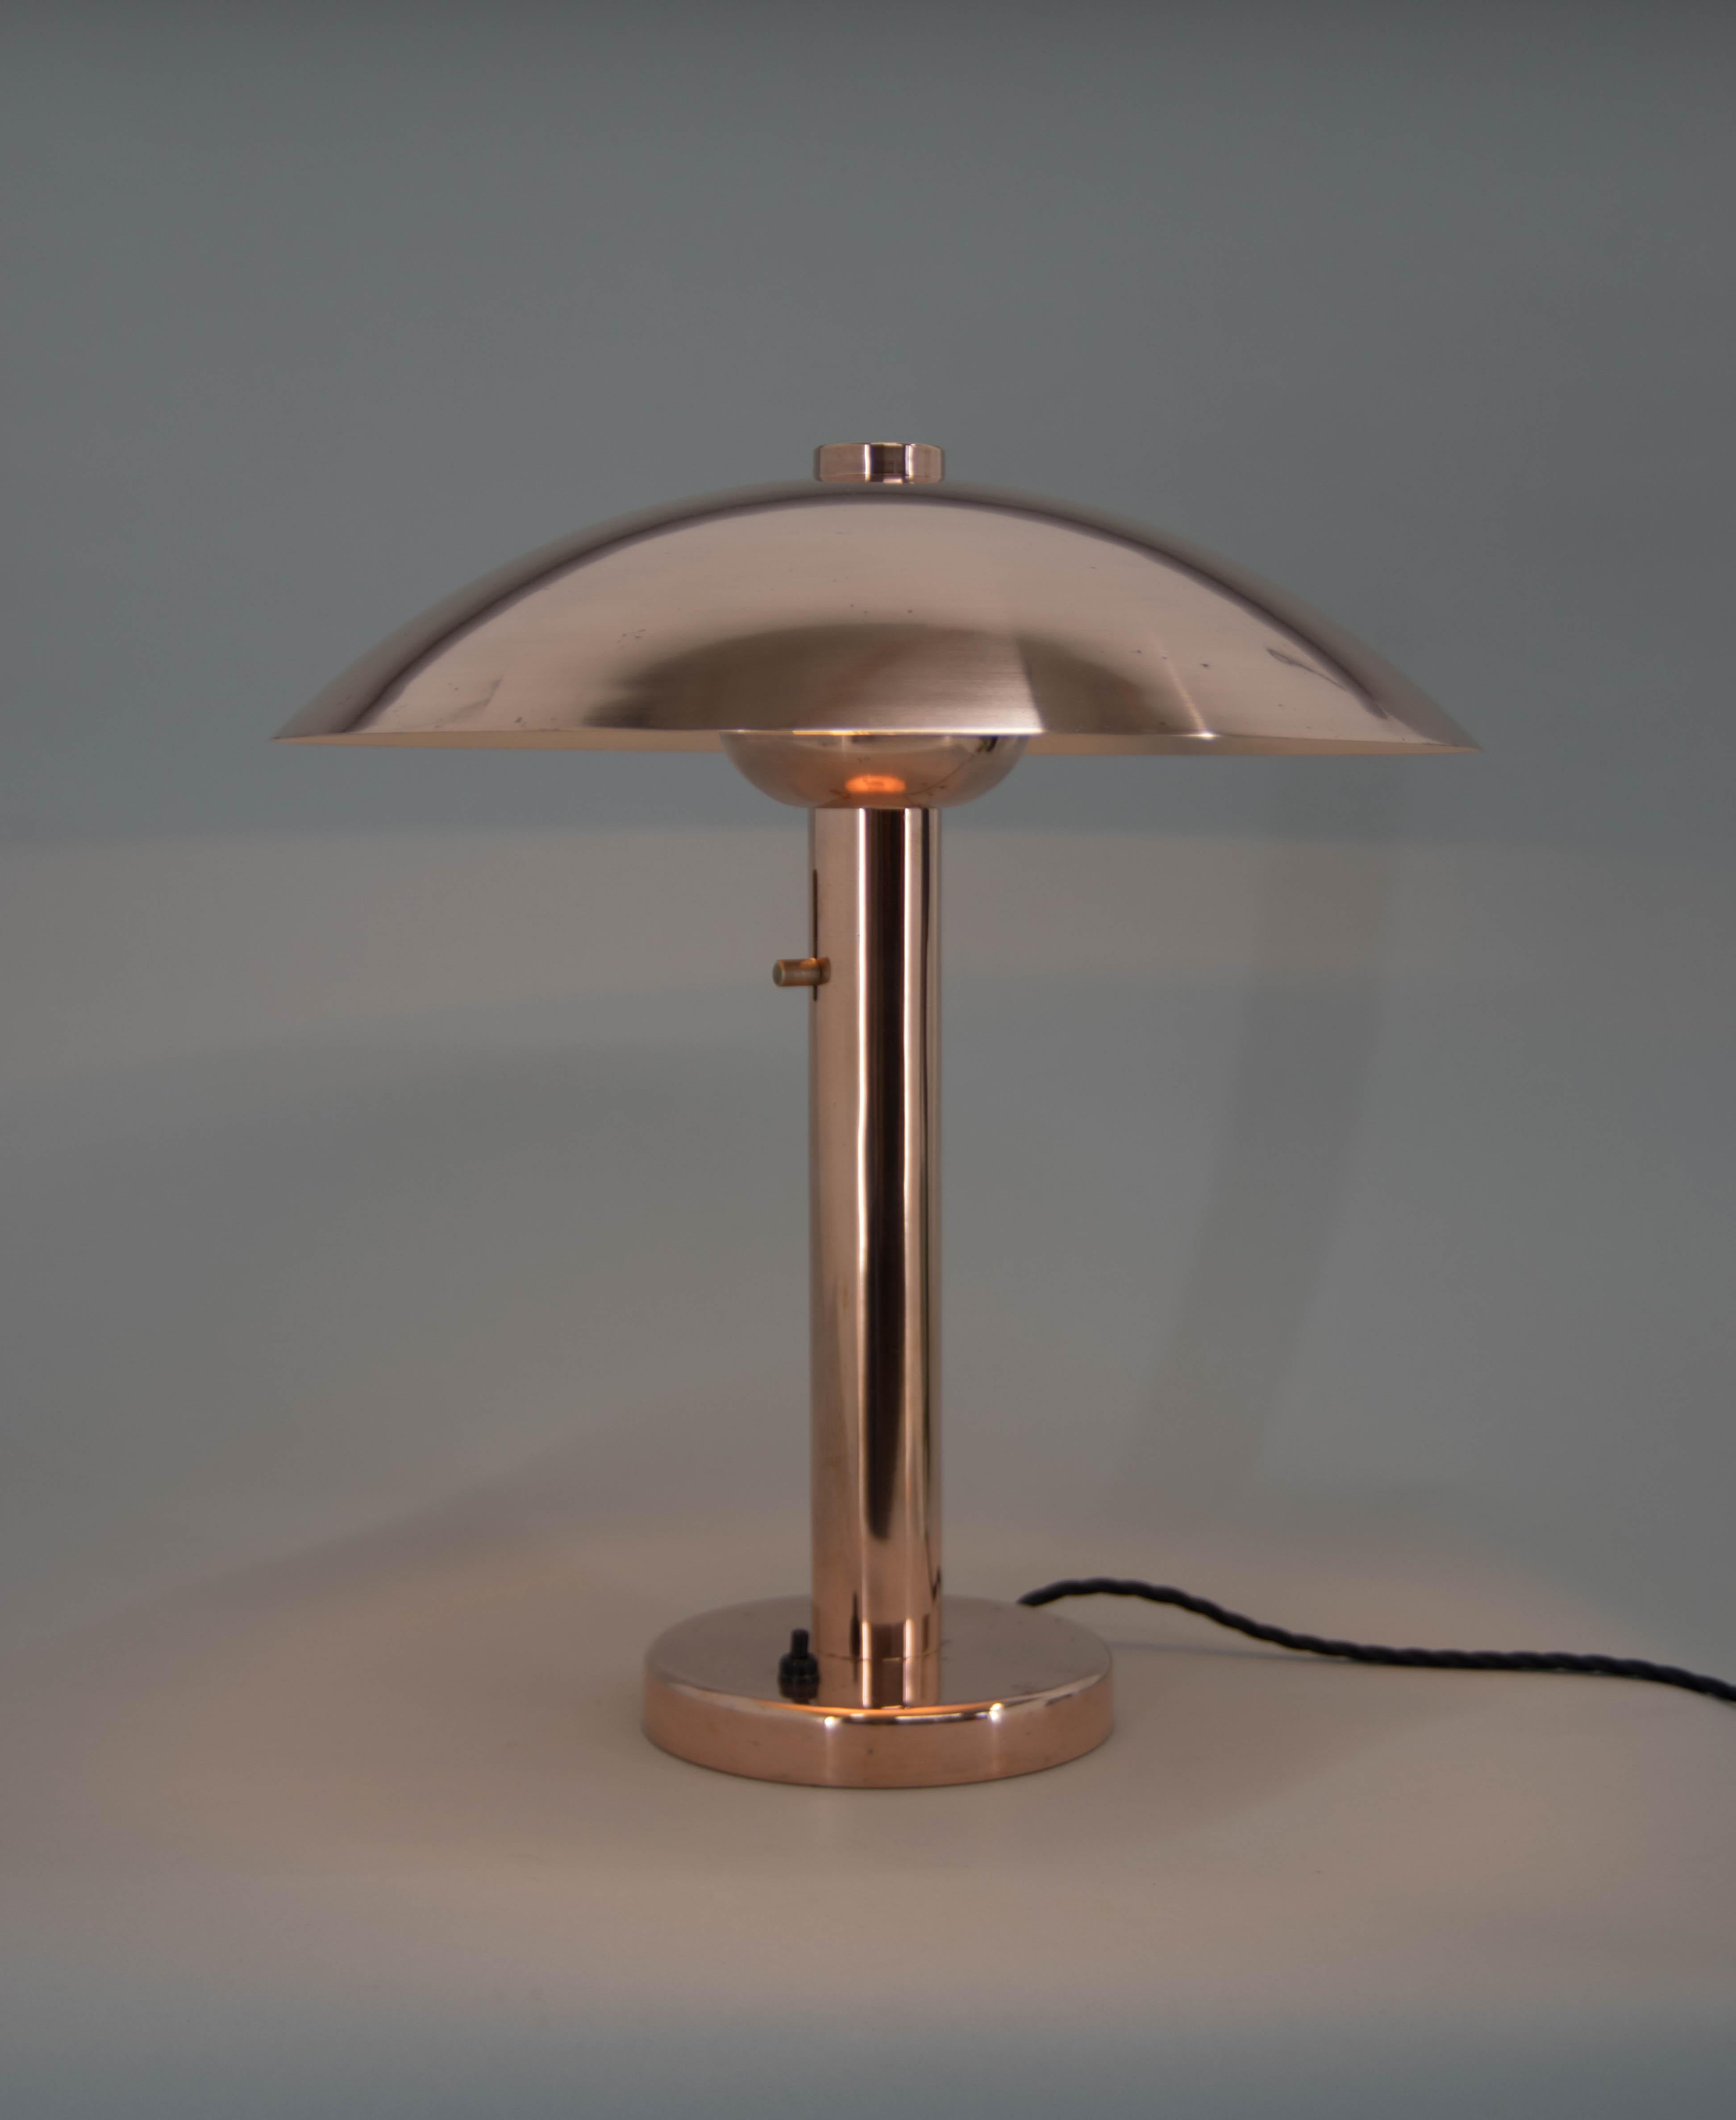 Große Version der Pilz-Tischlampe aus Kupfer. Die Höhe der Glühbirne ist einstellbar.
Restauriert: Oberfläche nachgearbeitet, neue silberne Farbe auf einem unteren Teil des Schirms, neu verkabelt.
1x60W, E25-E27 Glühbirne.
Inklusive